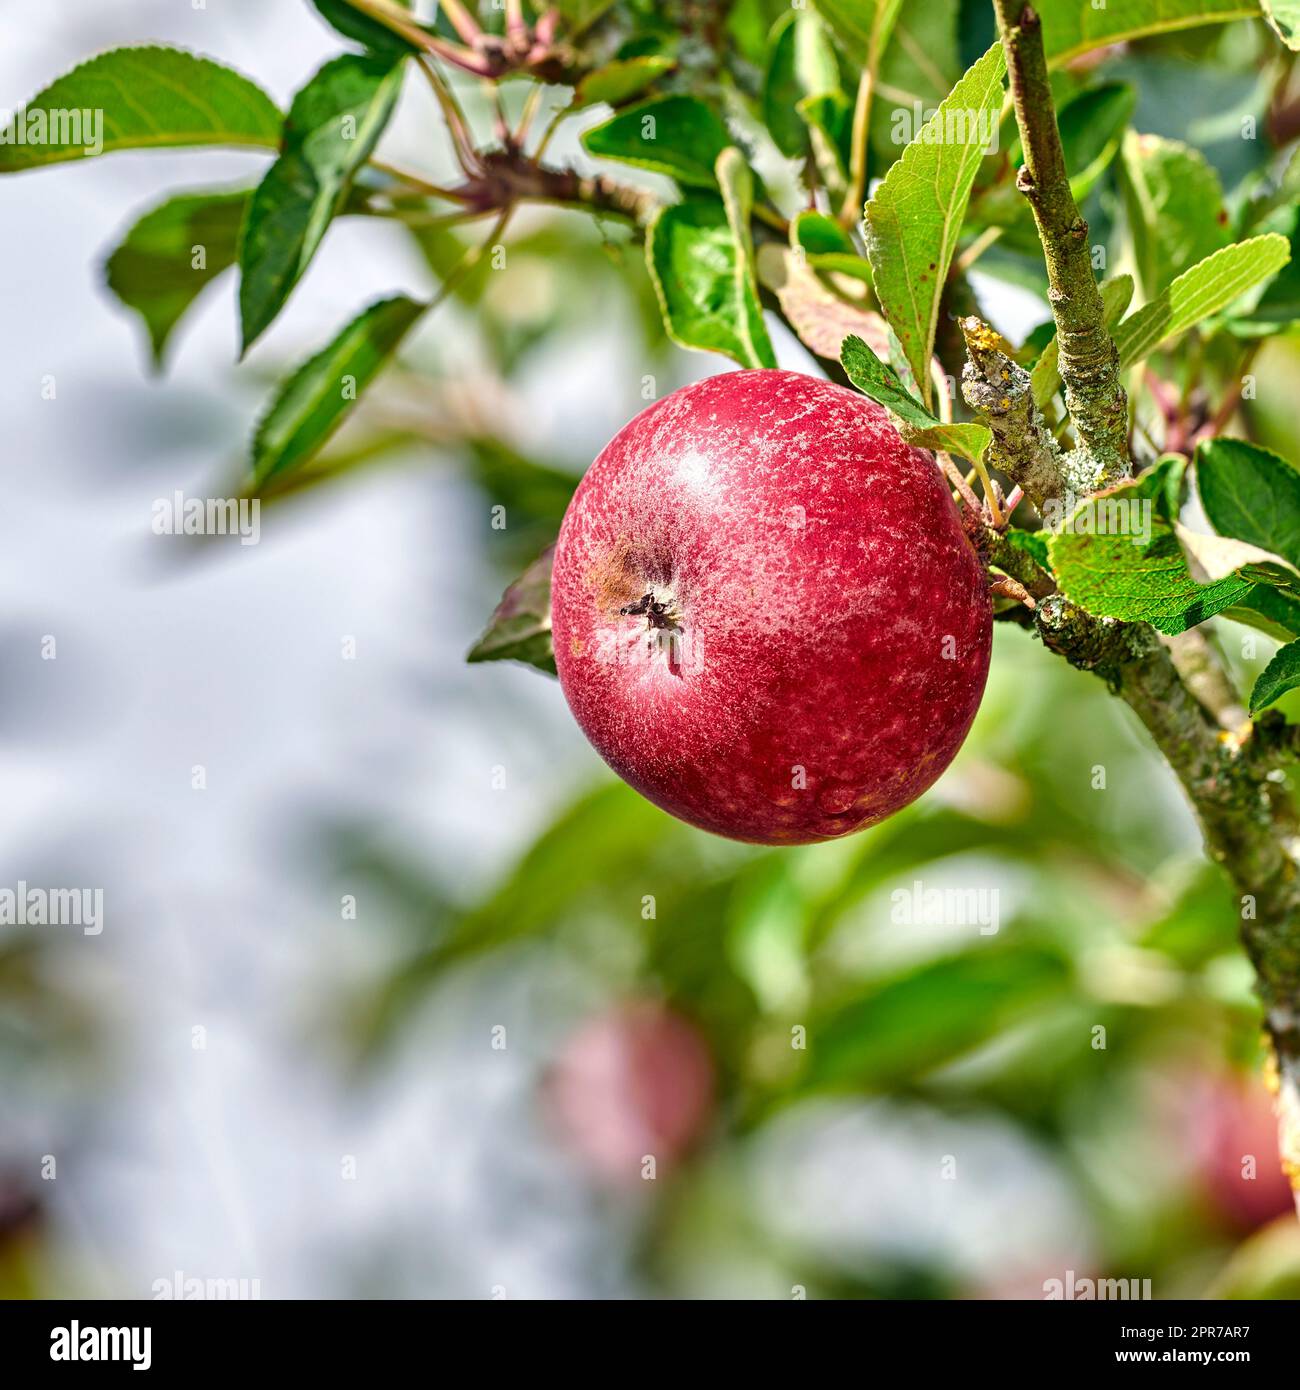 Ein Apfel pro Tag hält den Arzt fern. Das Apfelpflücken hat noch nie so verlockend ausgesehen - eine wirklich gesunde und verlockende Leckerbissen. Stockfoto